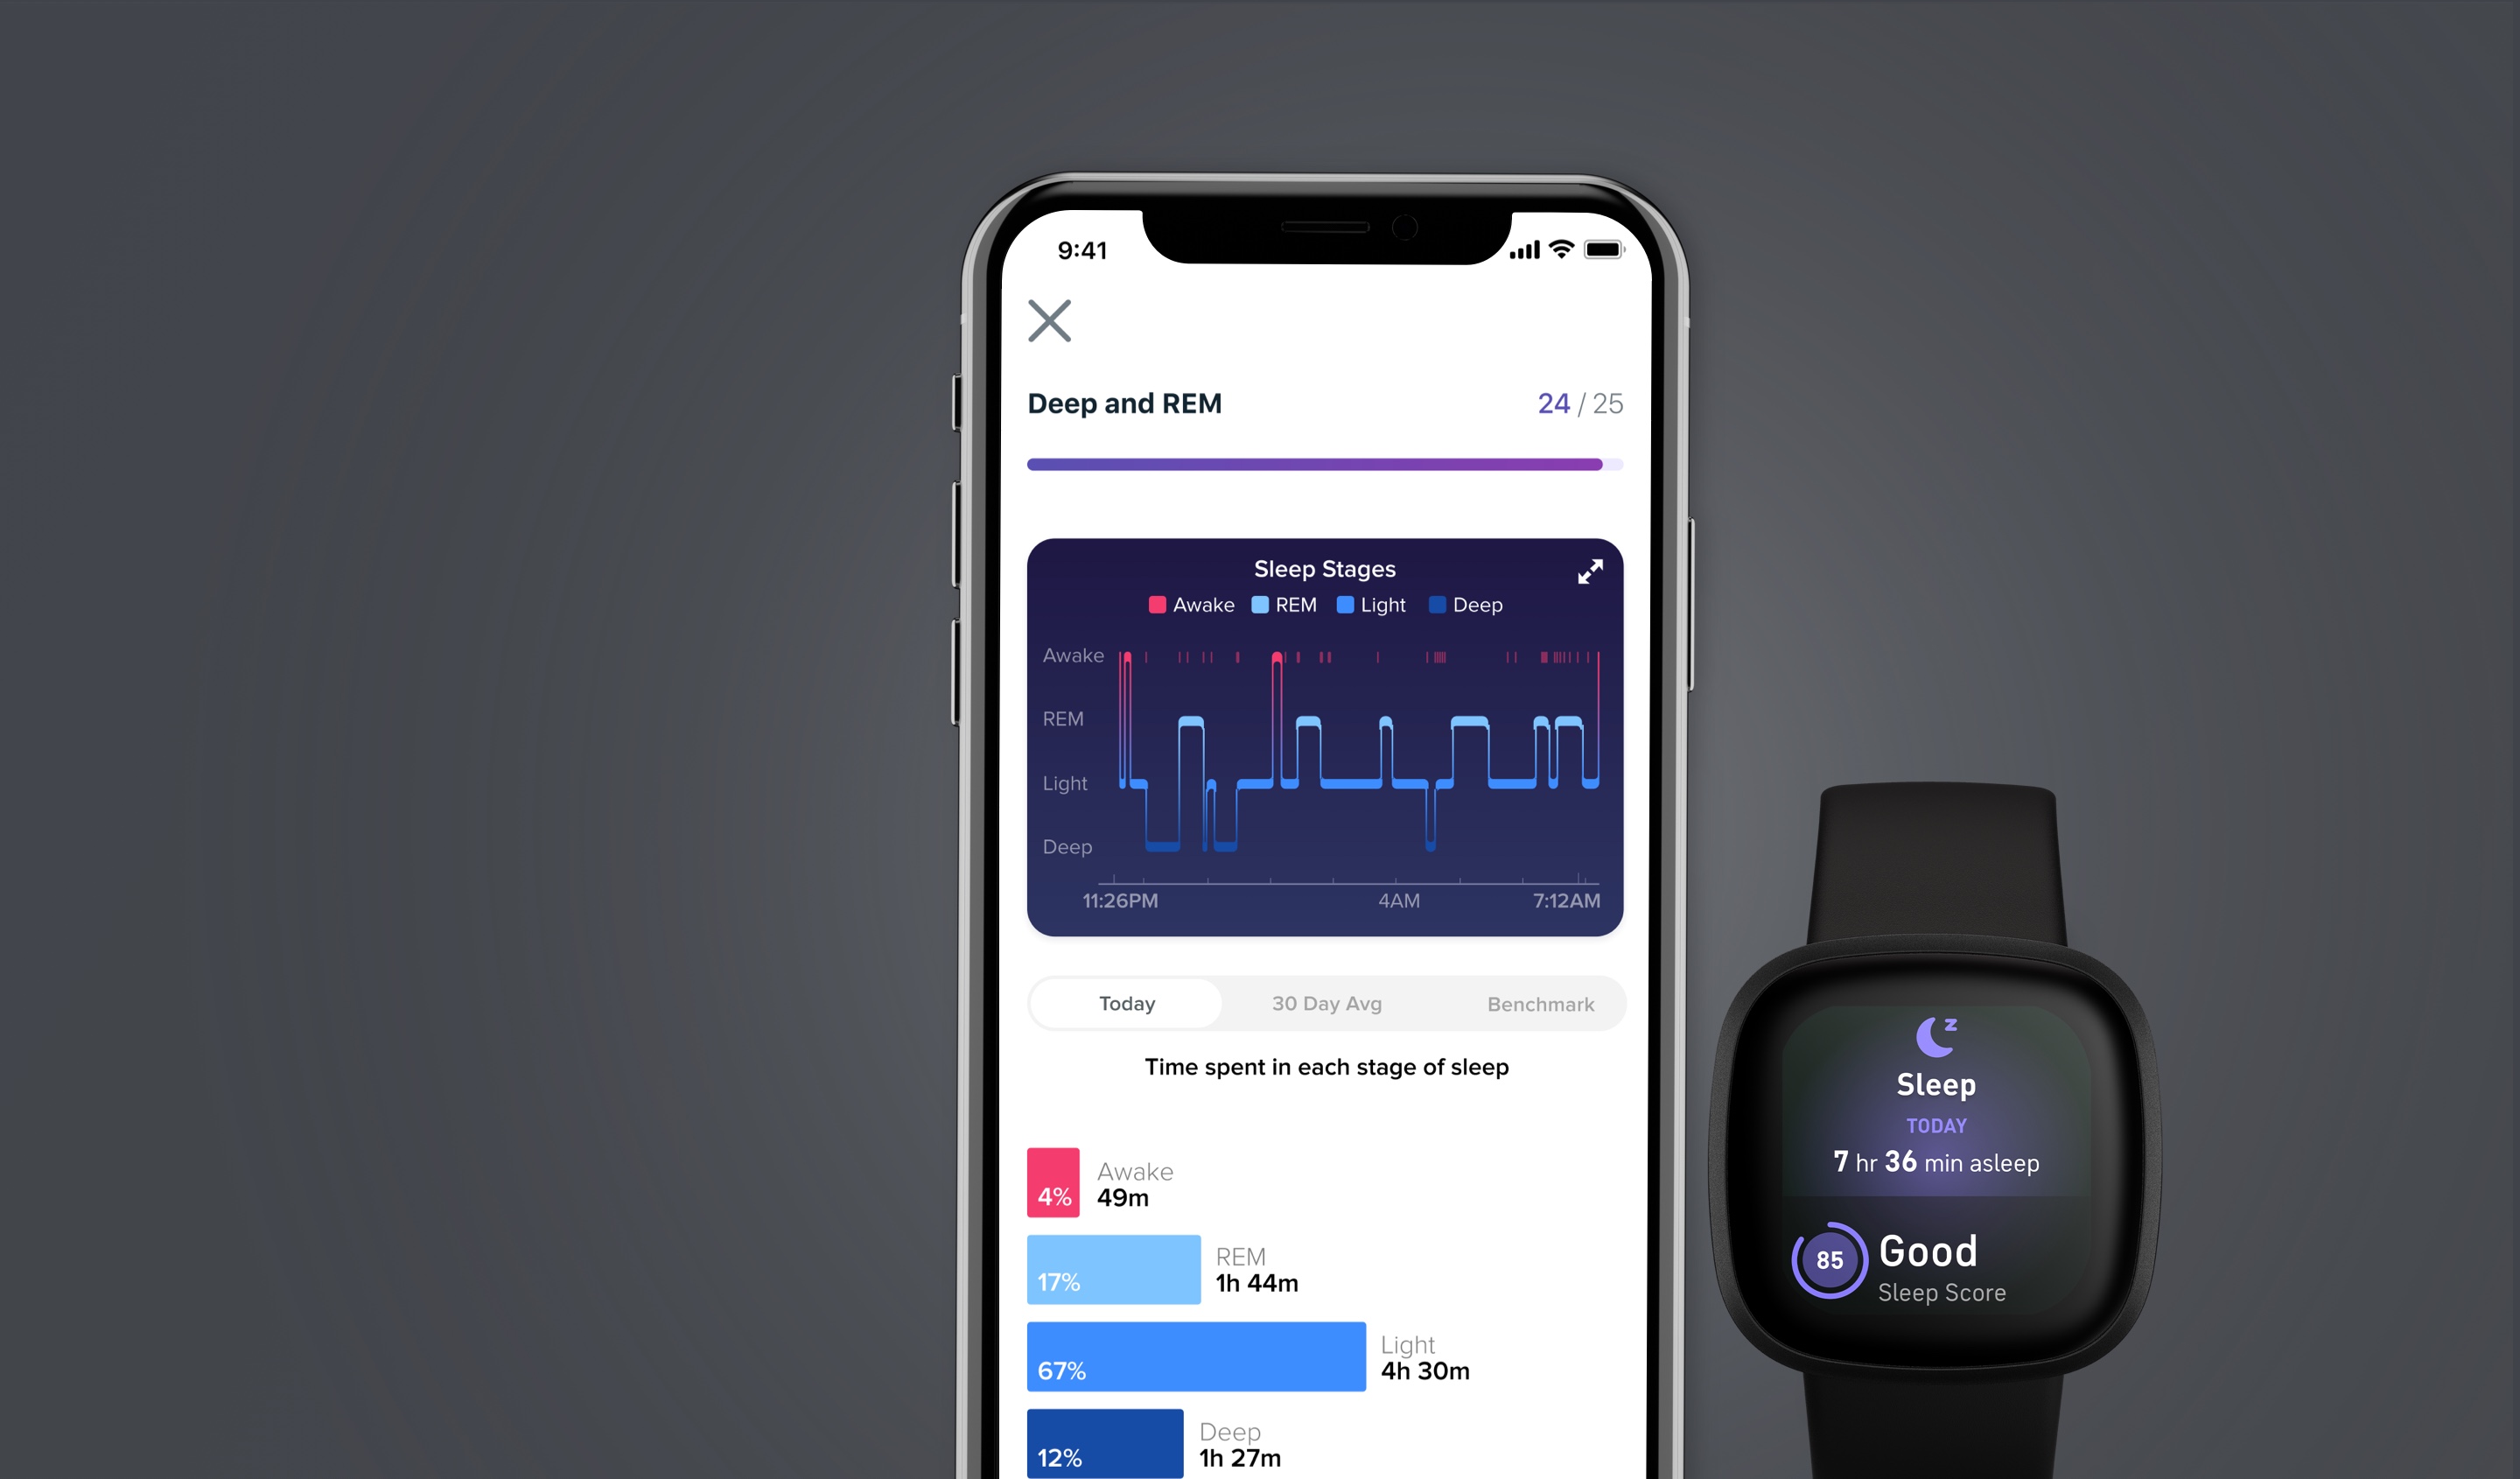 FITBIT VERSA 3 : Test complet de la dernière montre connectée Versa ⌚⚡⌚  Meilleure smartwatch 2020 ? 